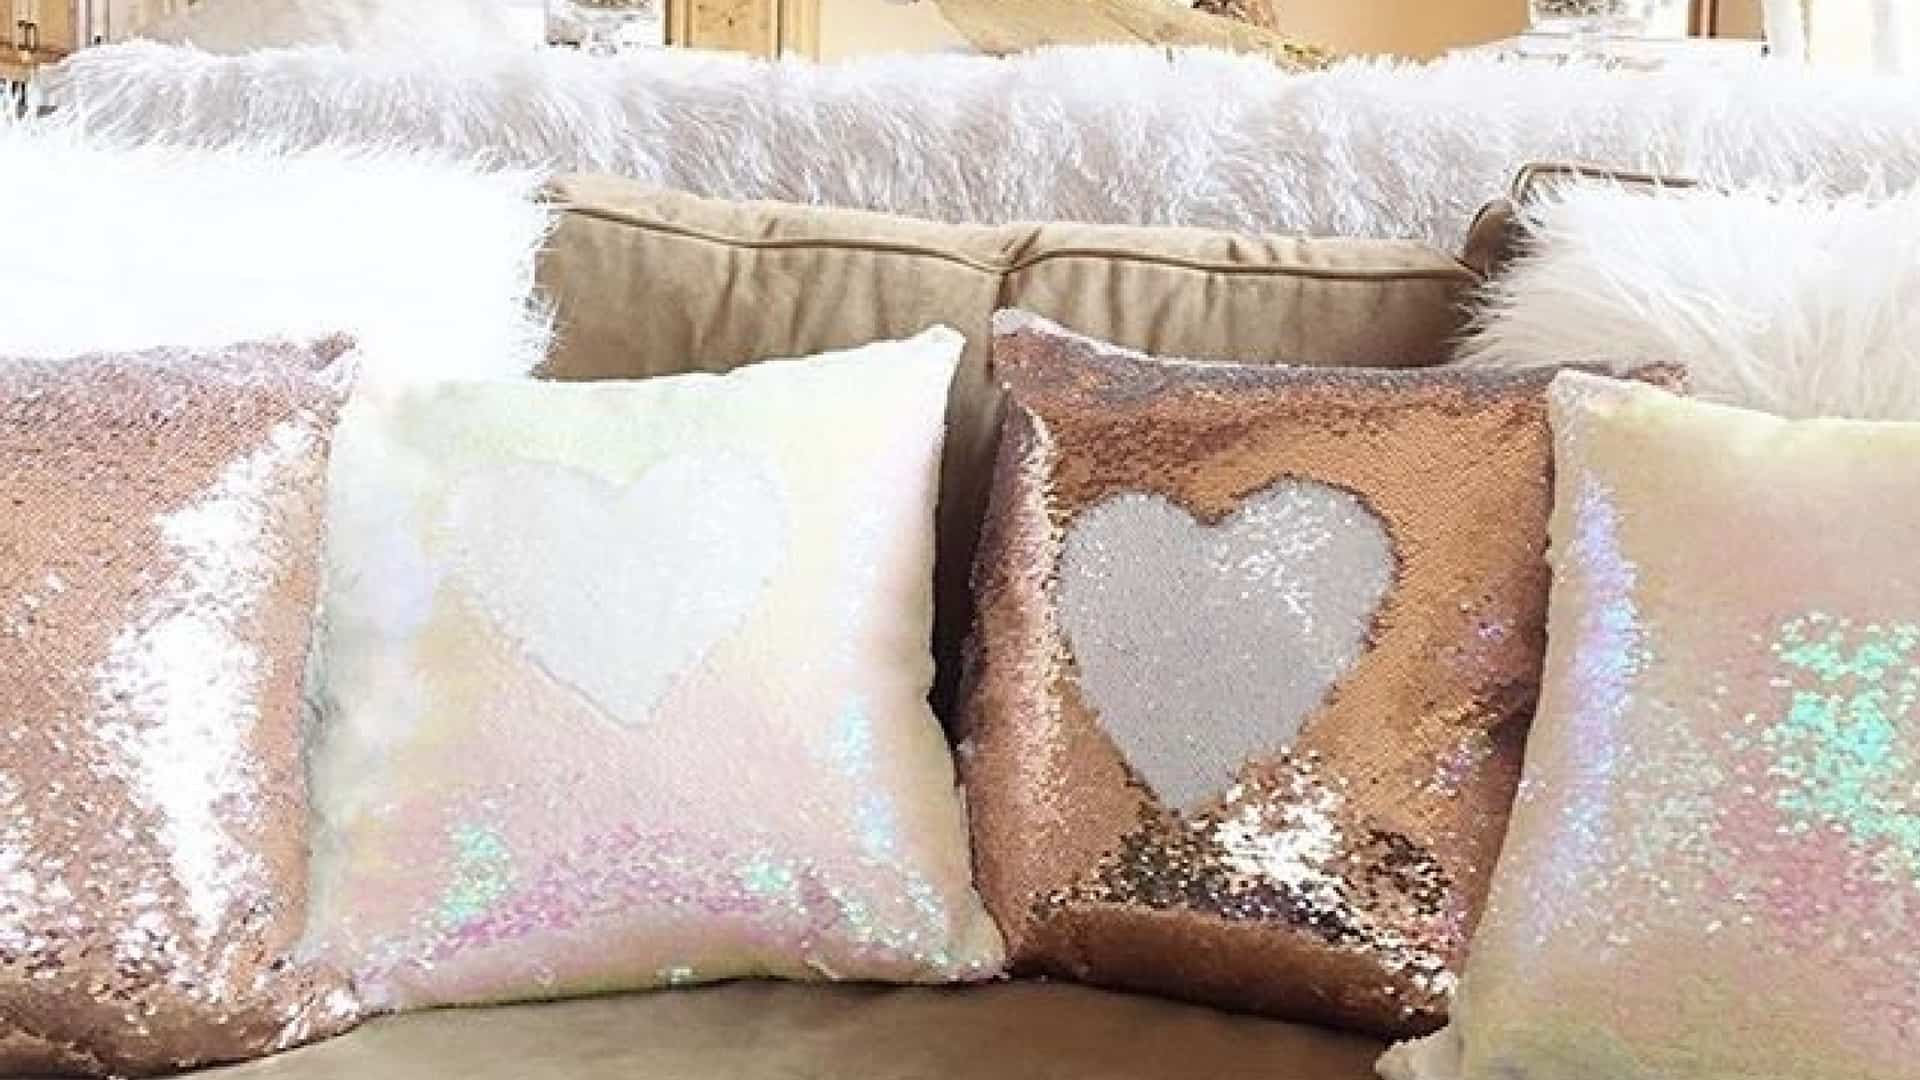 Glitter Magic Reversible Mermaid Sequin Cushion Cover Throw Pillow Case LH 